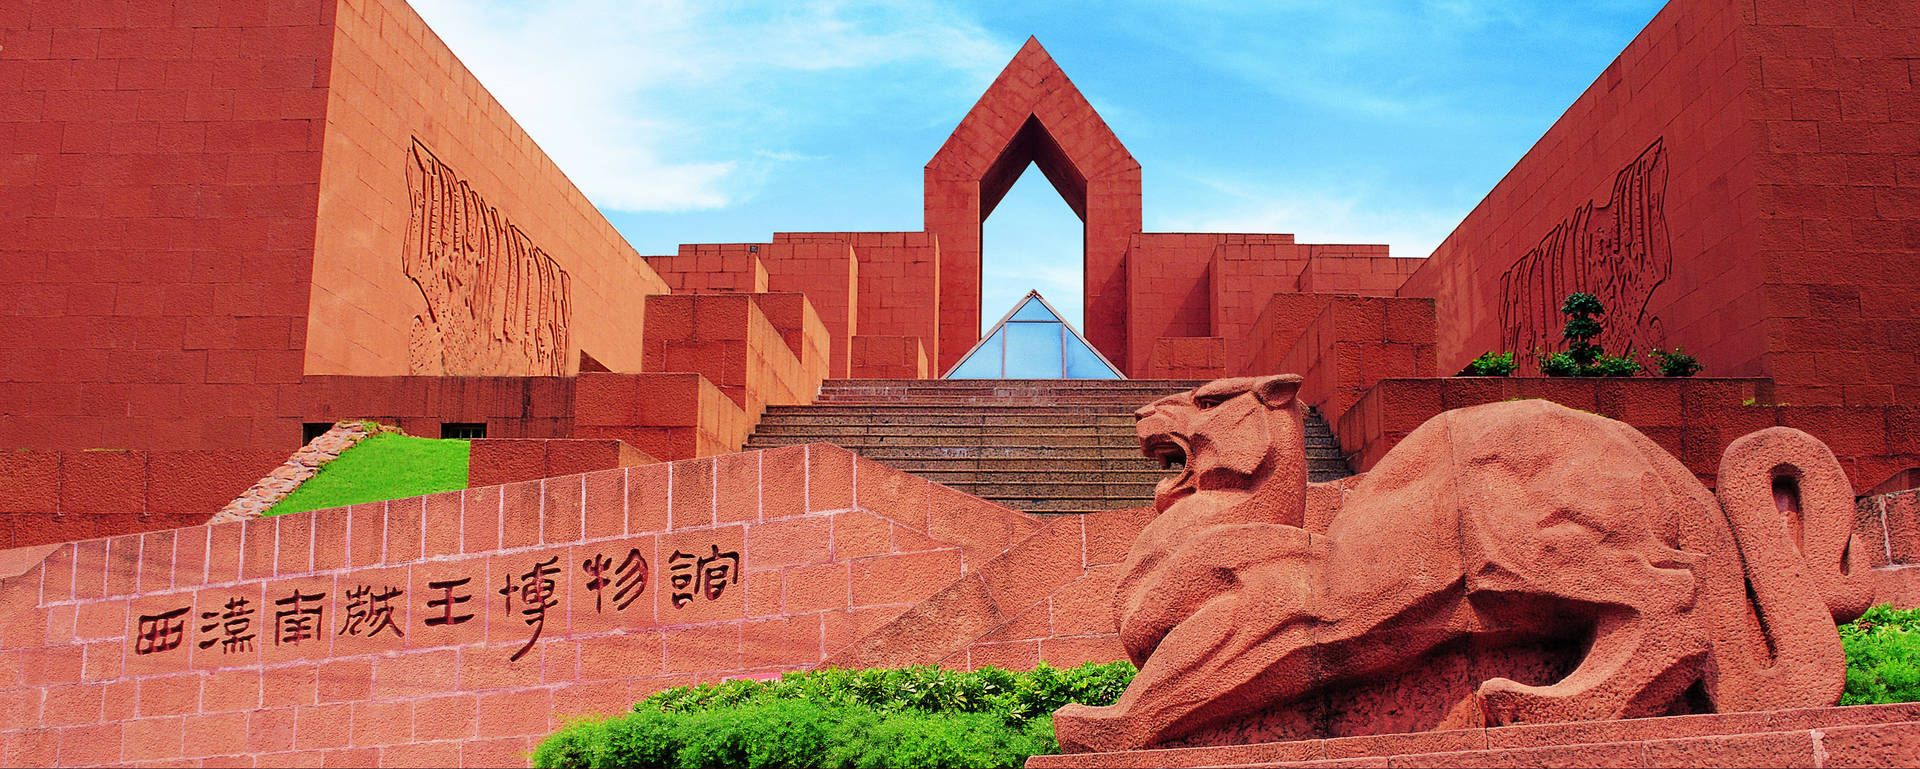 Guangzhouwestliches Han-mausoleum Wallpaper